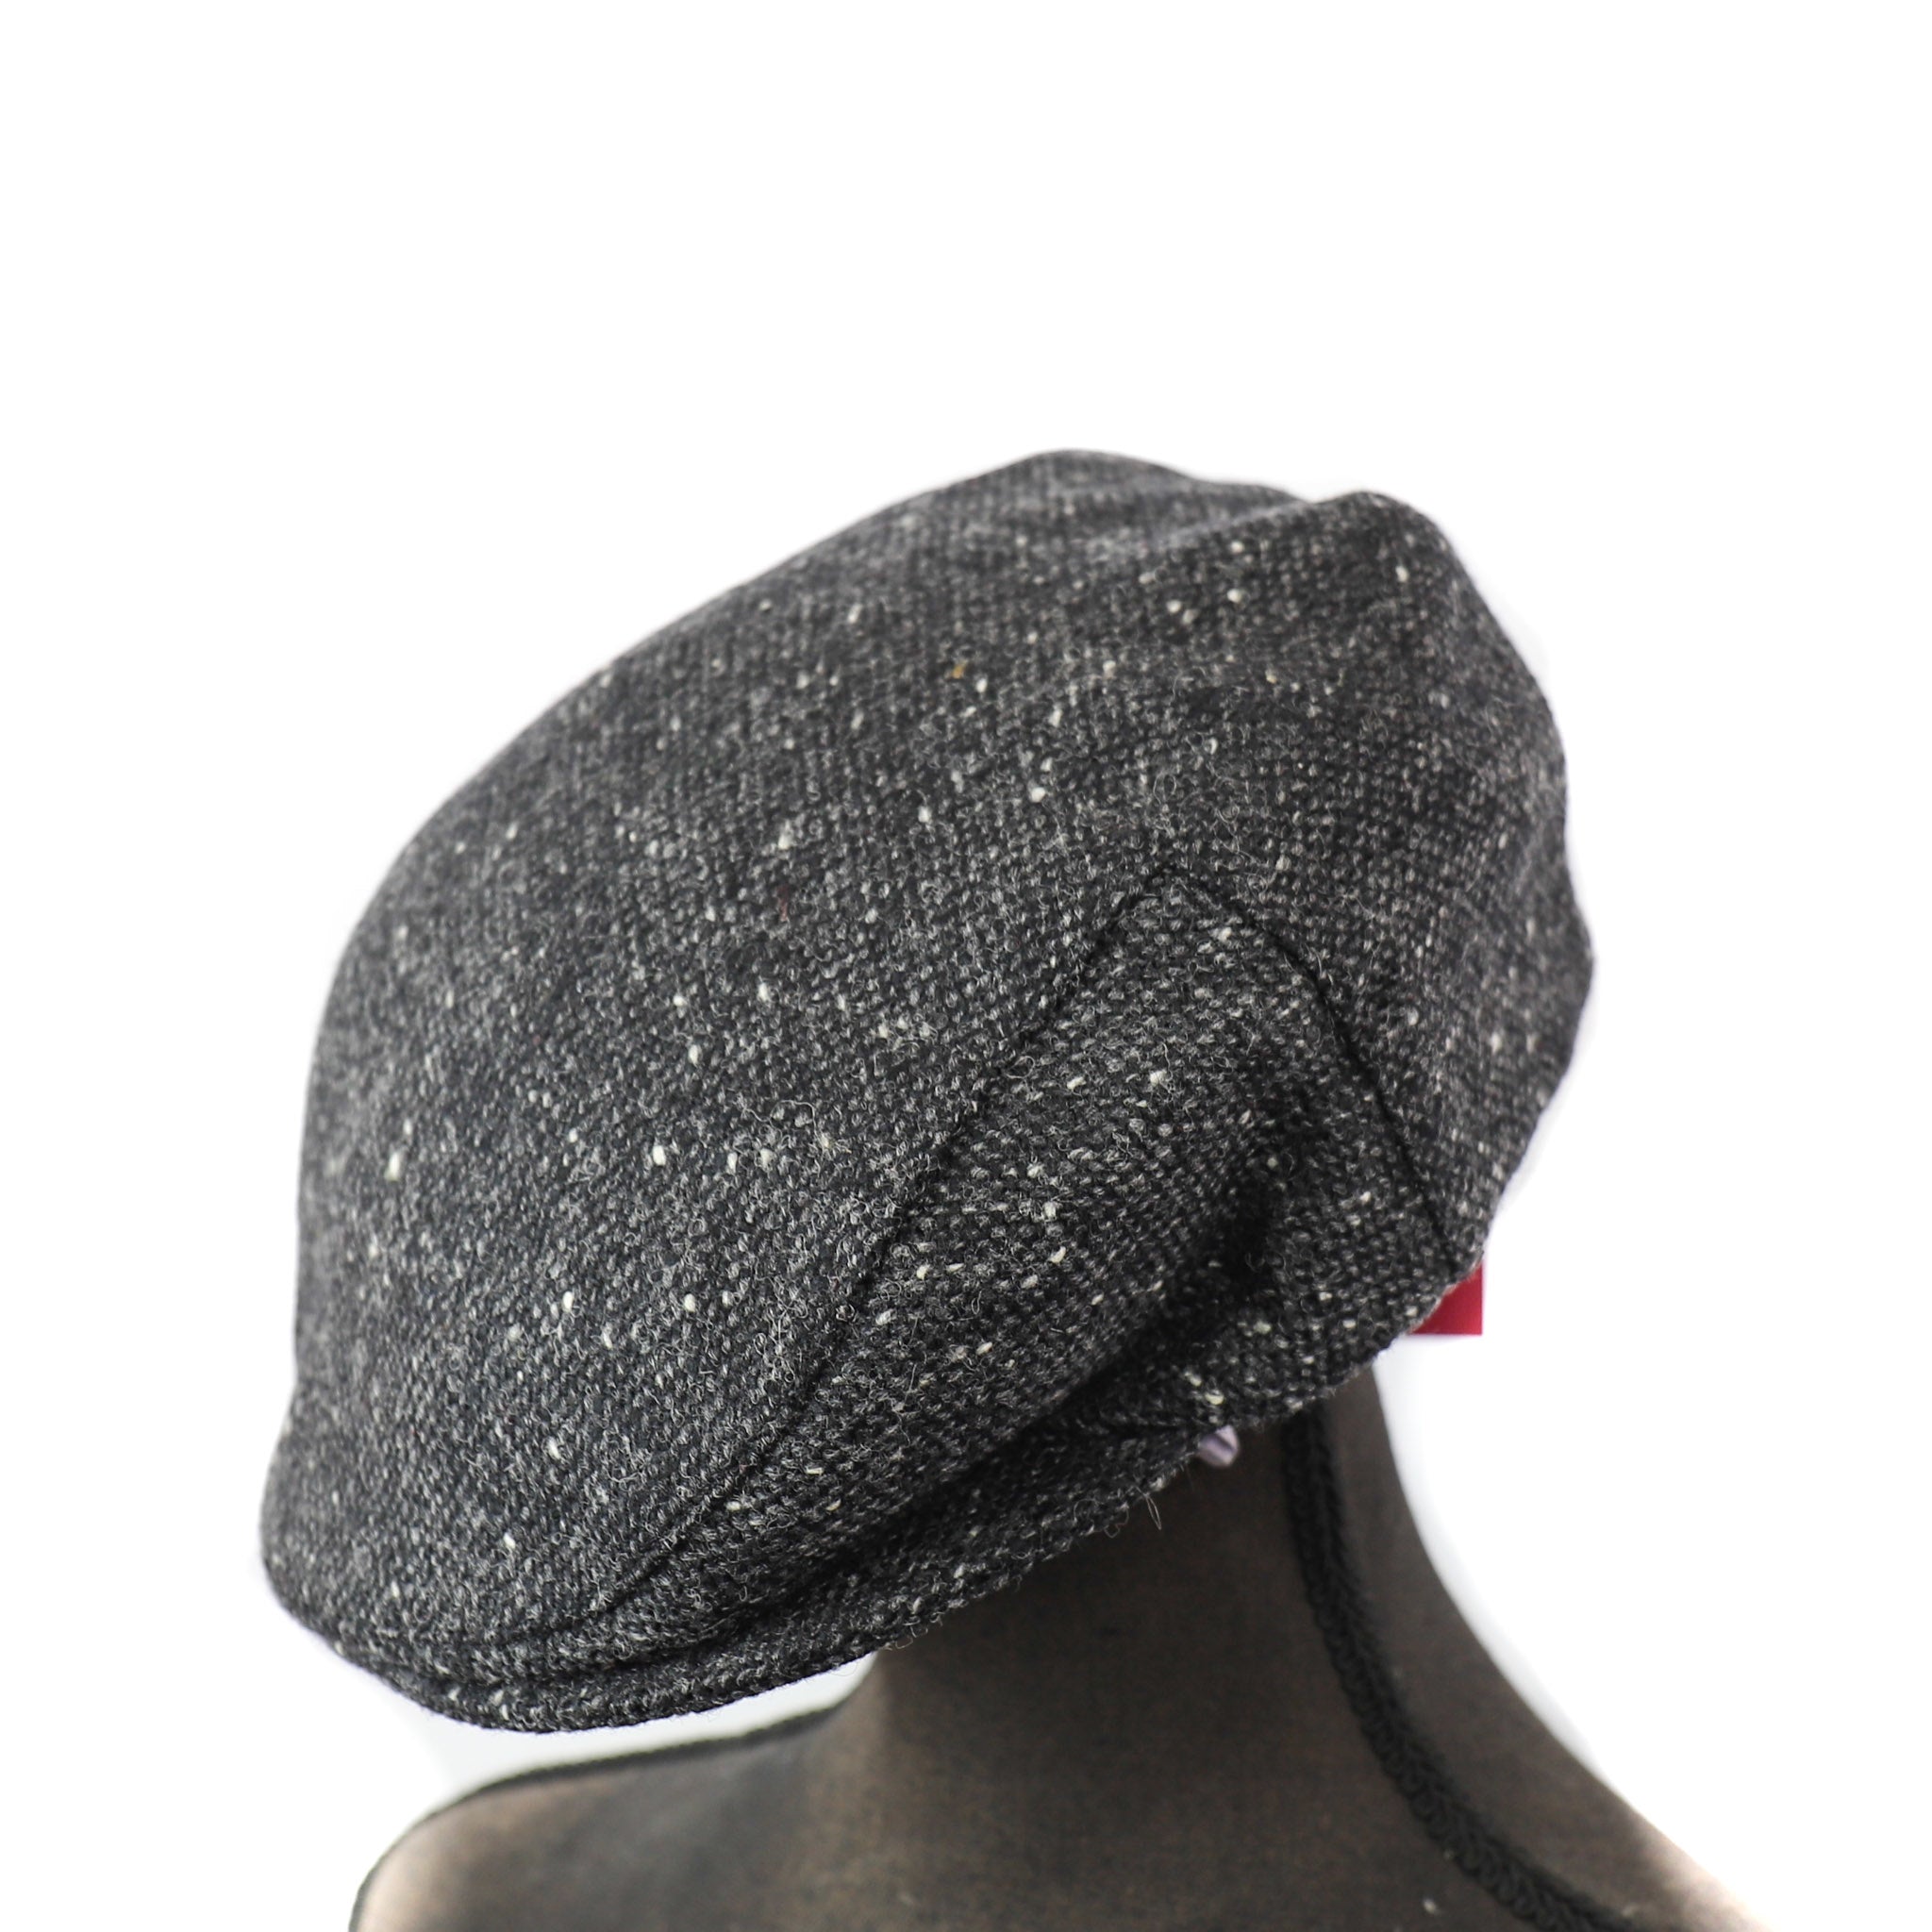 Flatcap Tweed - Gray/black (D 30)